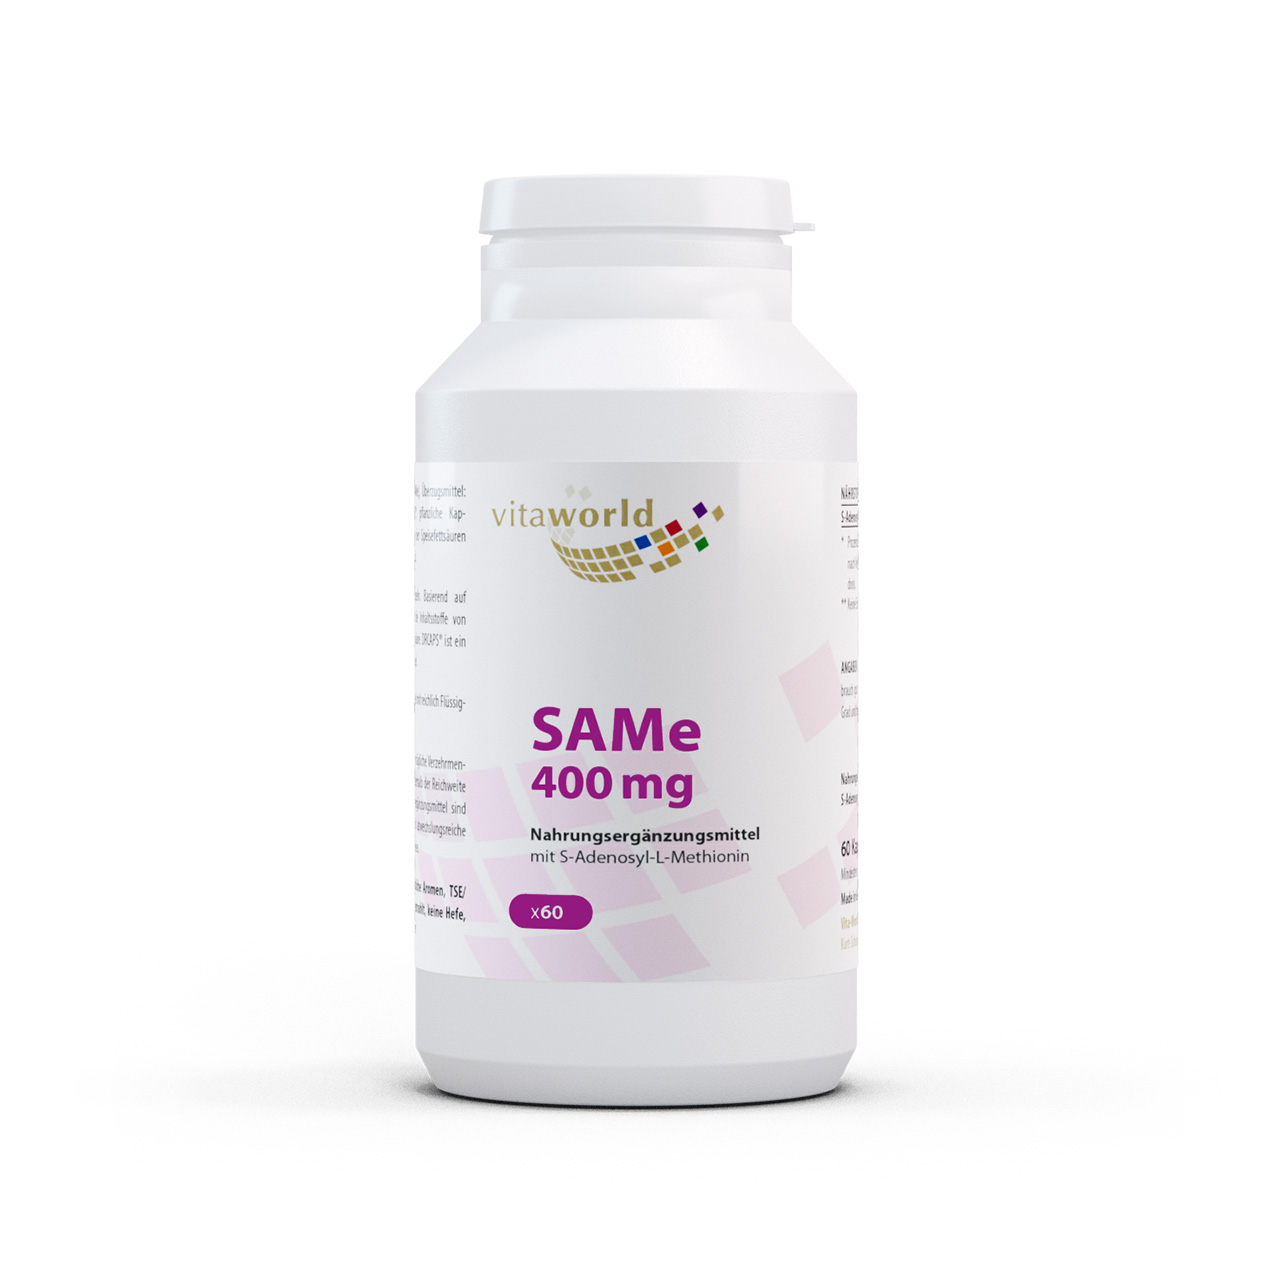 Vita World SAMe 400mg | 60 Kapseln | enthält 75 % aktives und 25 % inaktives Isomer | vegan | gluten- und laktosefrei